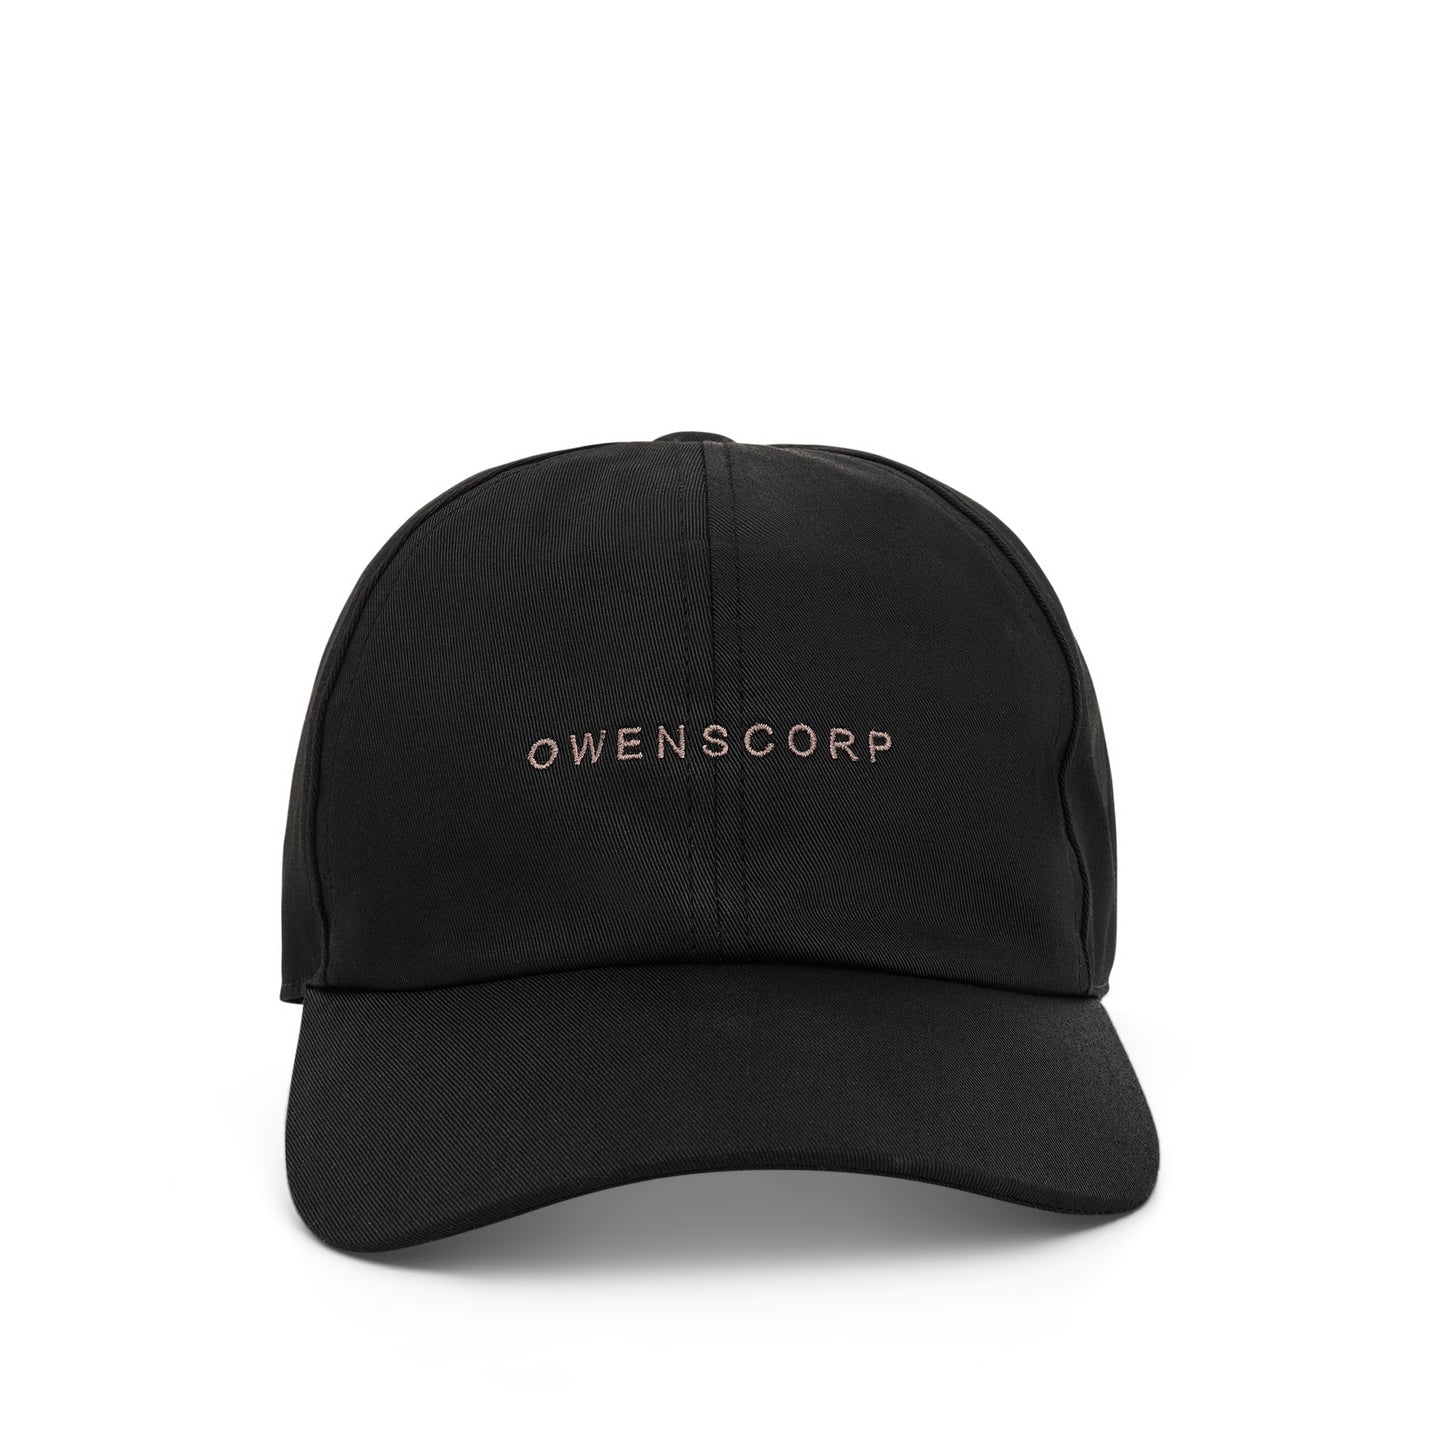 Owenscorp Baseball Cap in Black/Dust